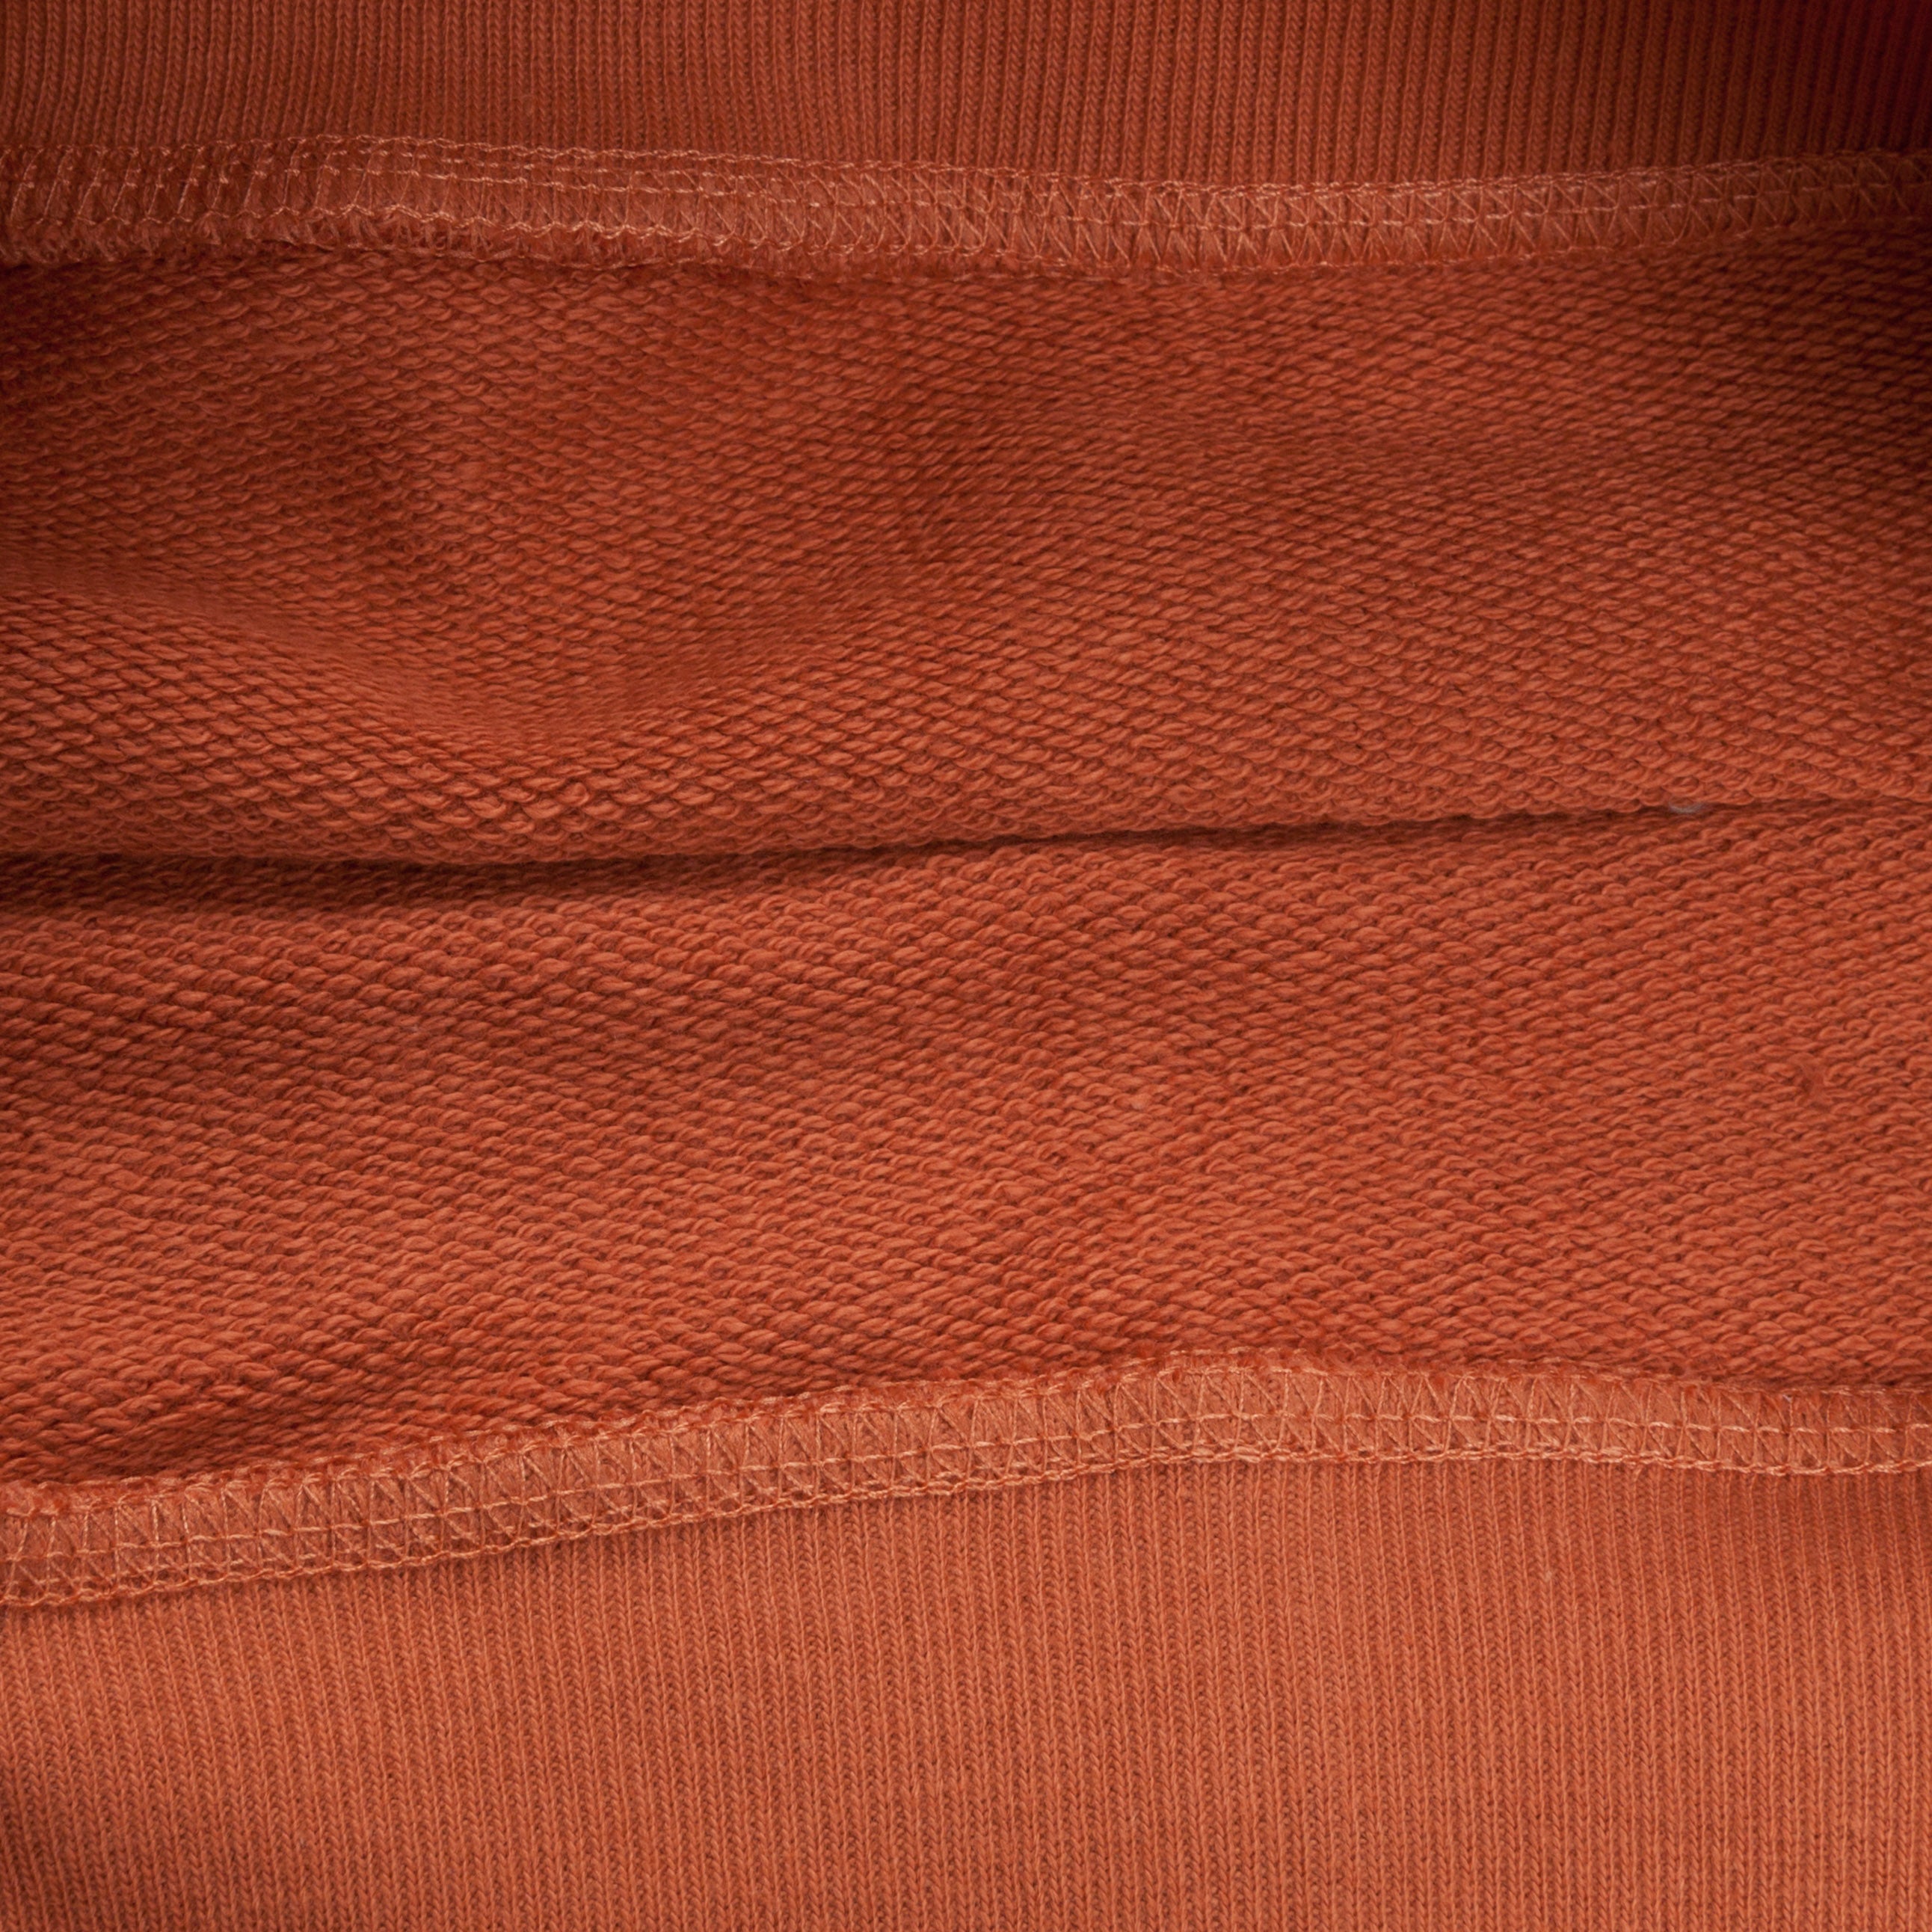 Merz B Schwanen 346 Fleece sweater light rust